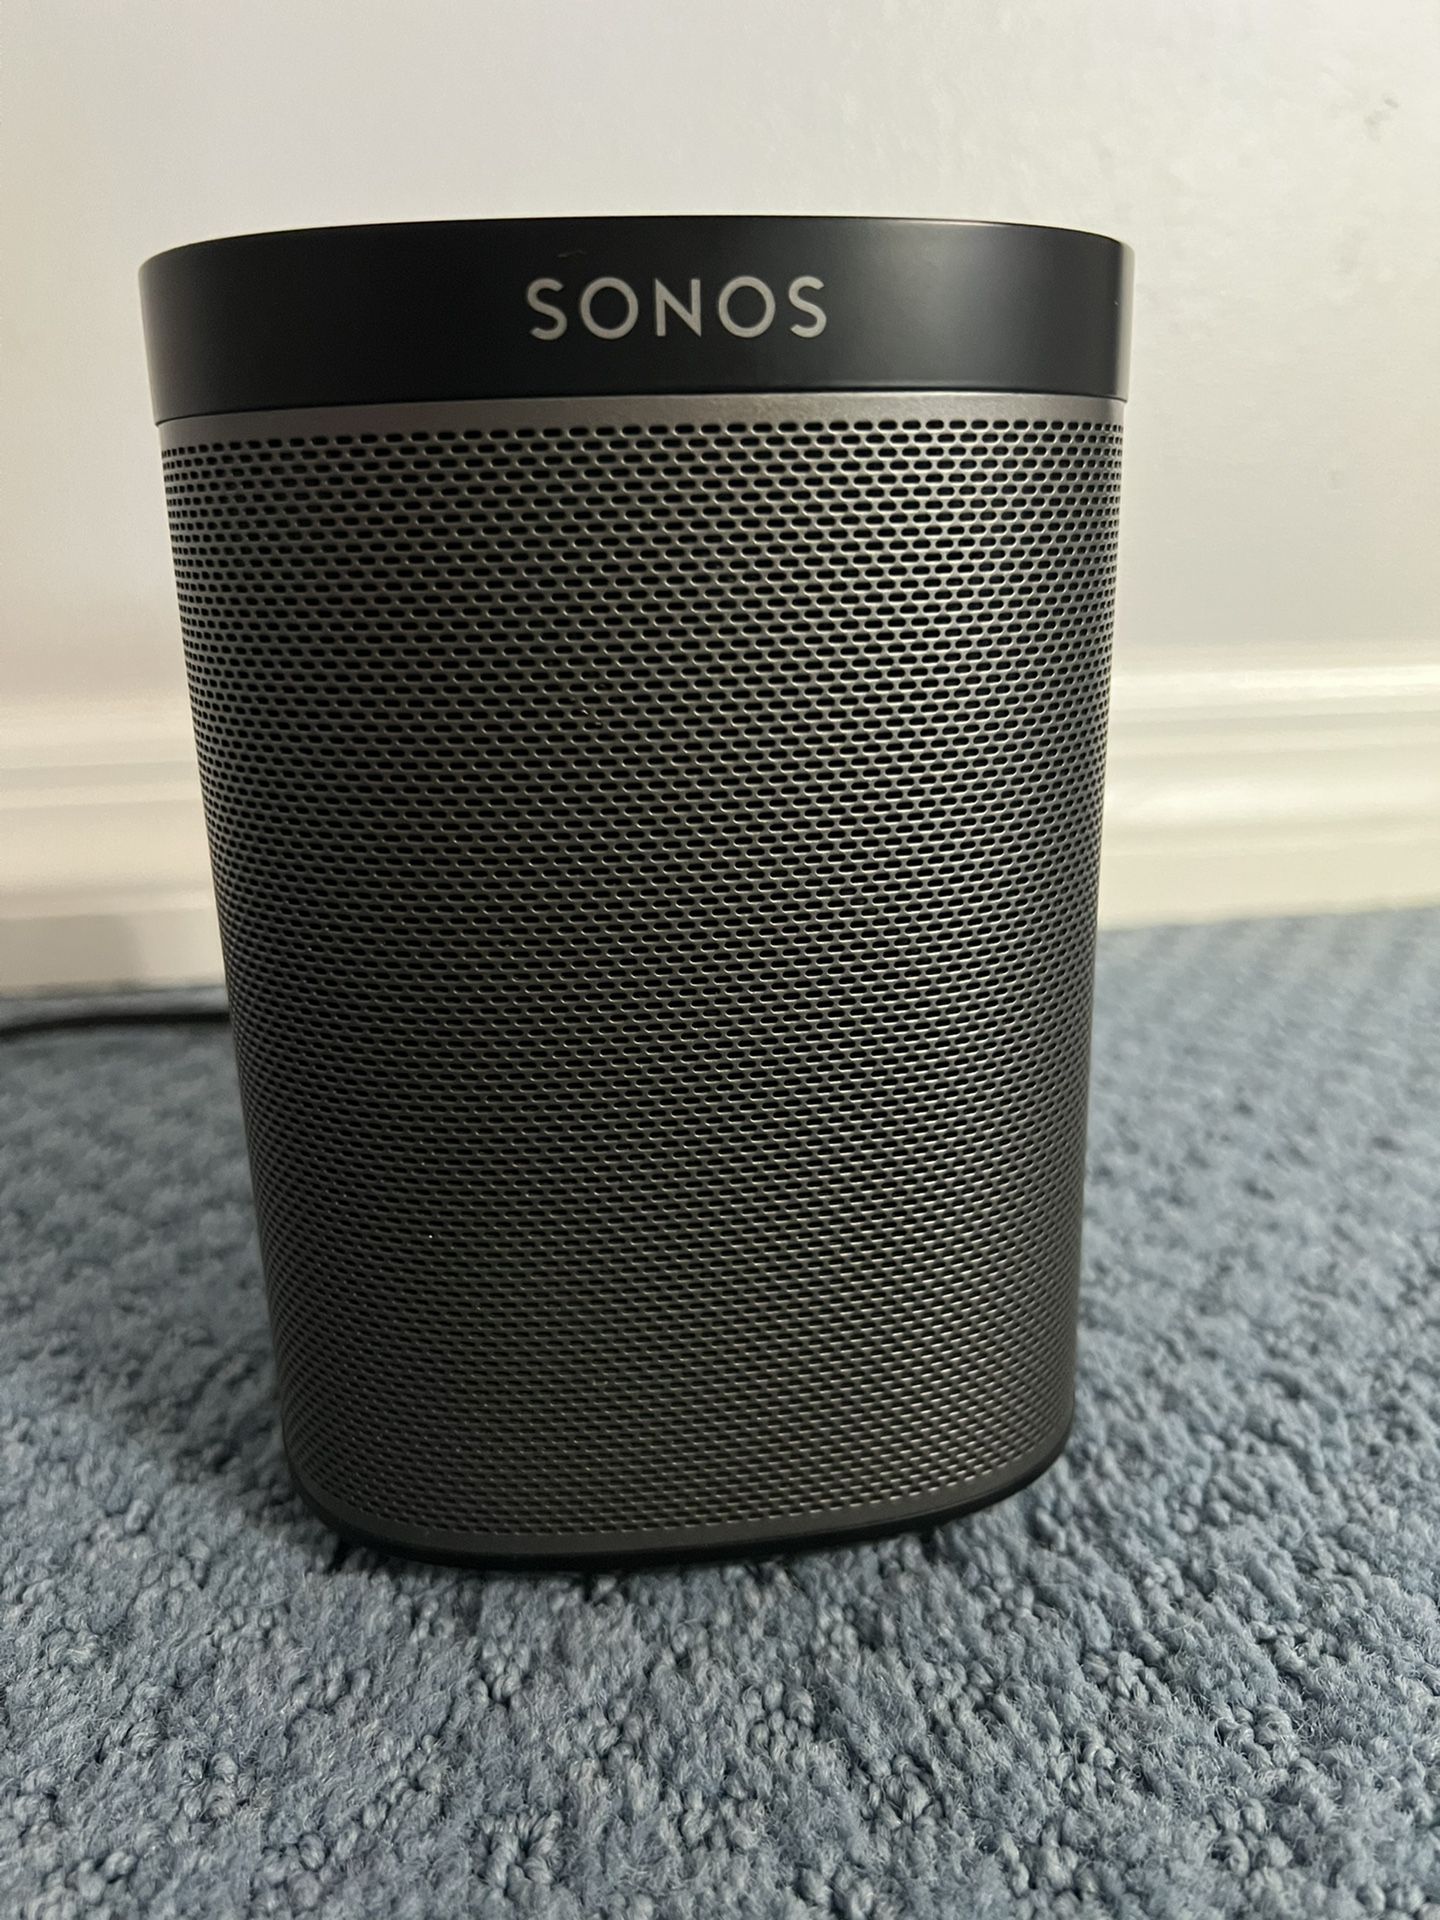 Sonos Wireless Speaker Model Play:1